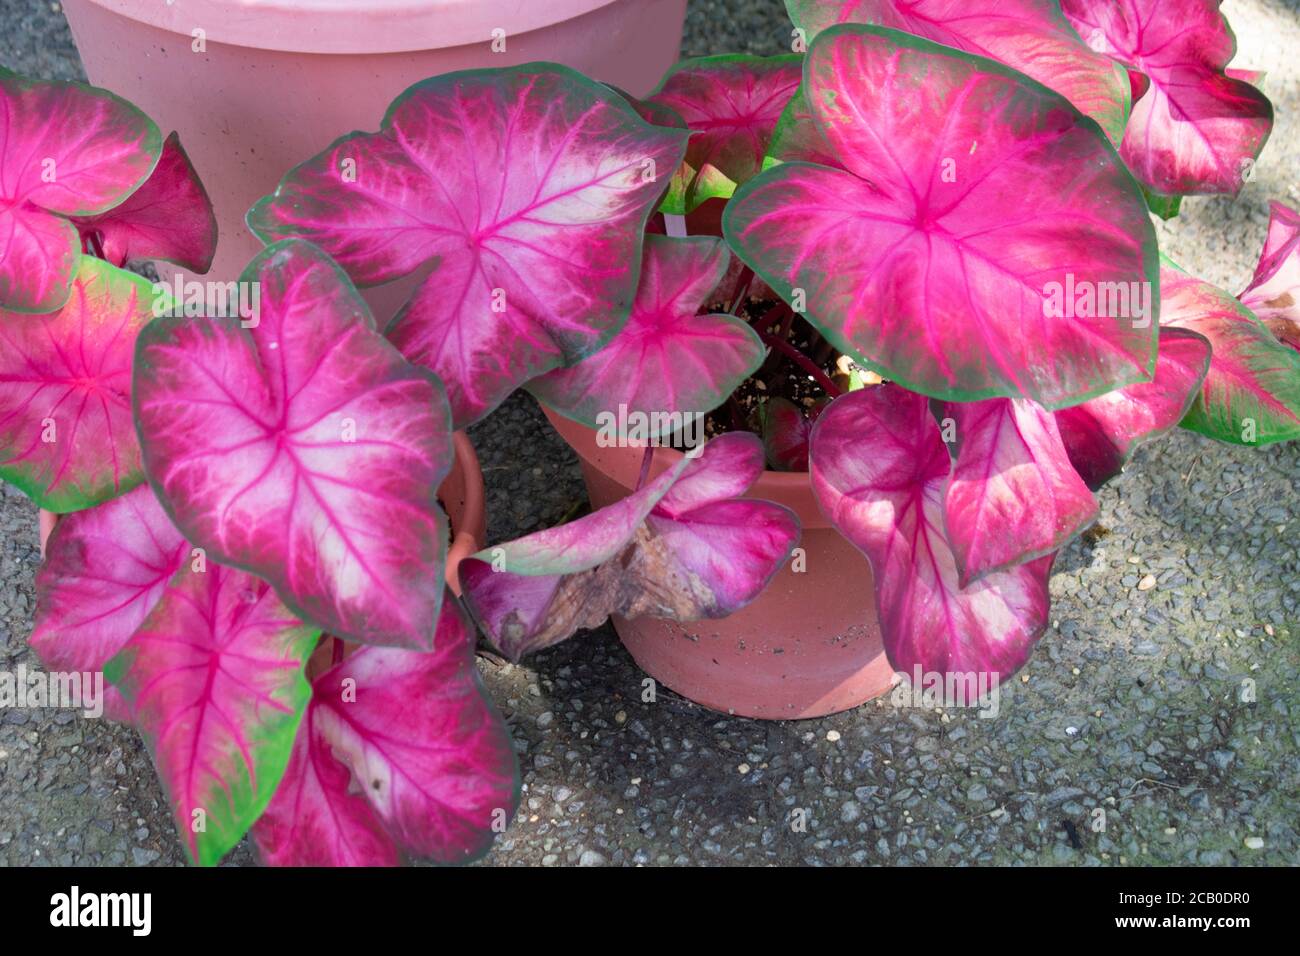 Rosebud, ein rosa und grünes Fancy Blatt Caladium. Caladium ist eine Gattung von blühenden Pflanzen in der Familie der Arum, Araceae. Stockfoto